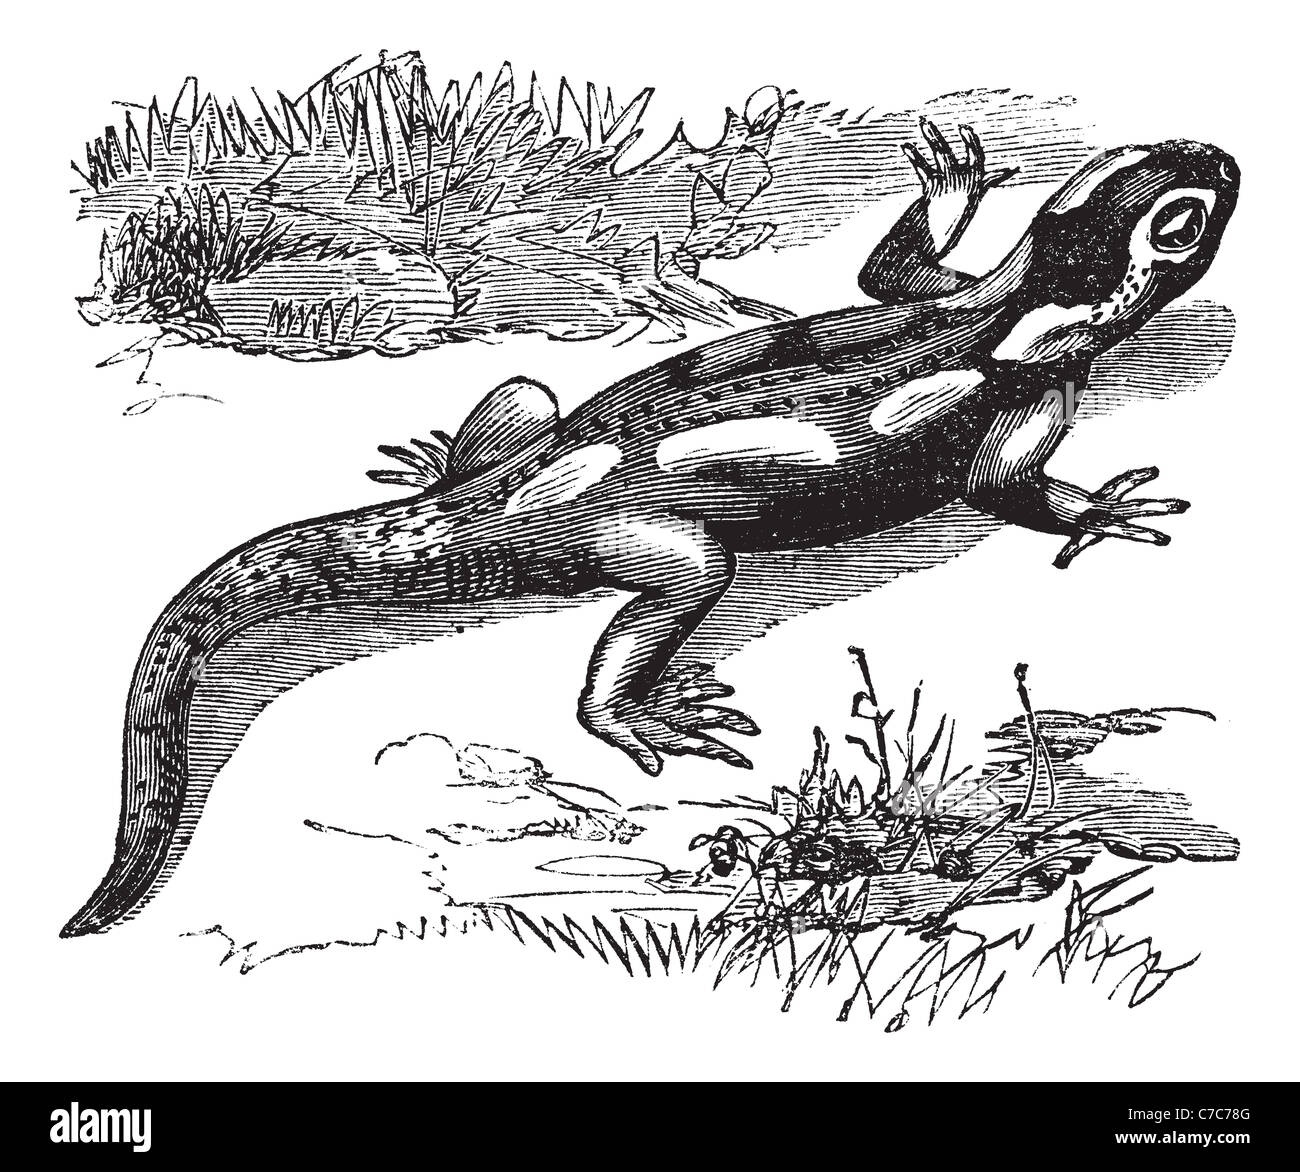 Salamandre Tachetée, gravure d'époque. Vieille illustration gravée de salamandre dans la prairie. Banque D'Images